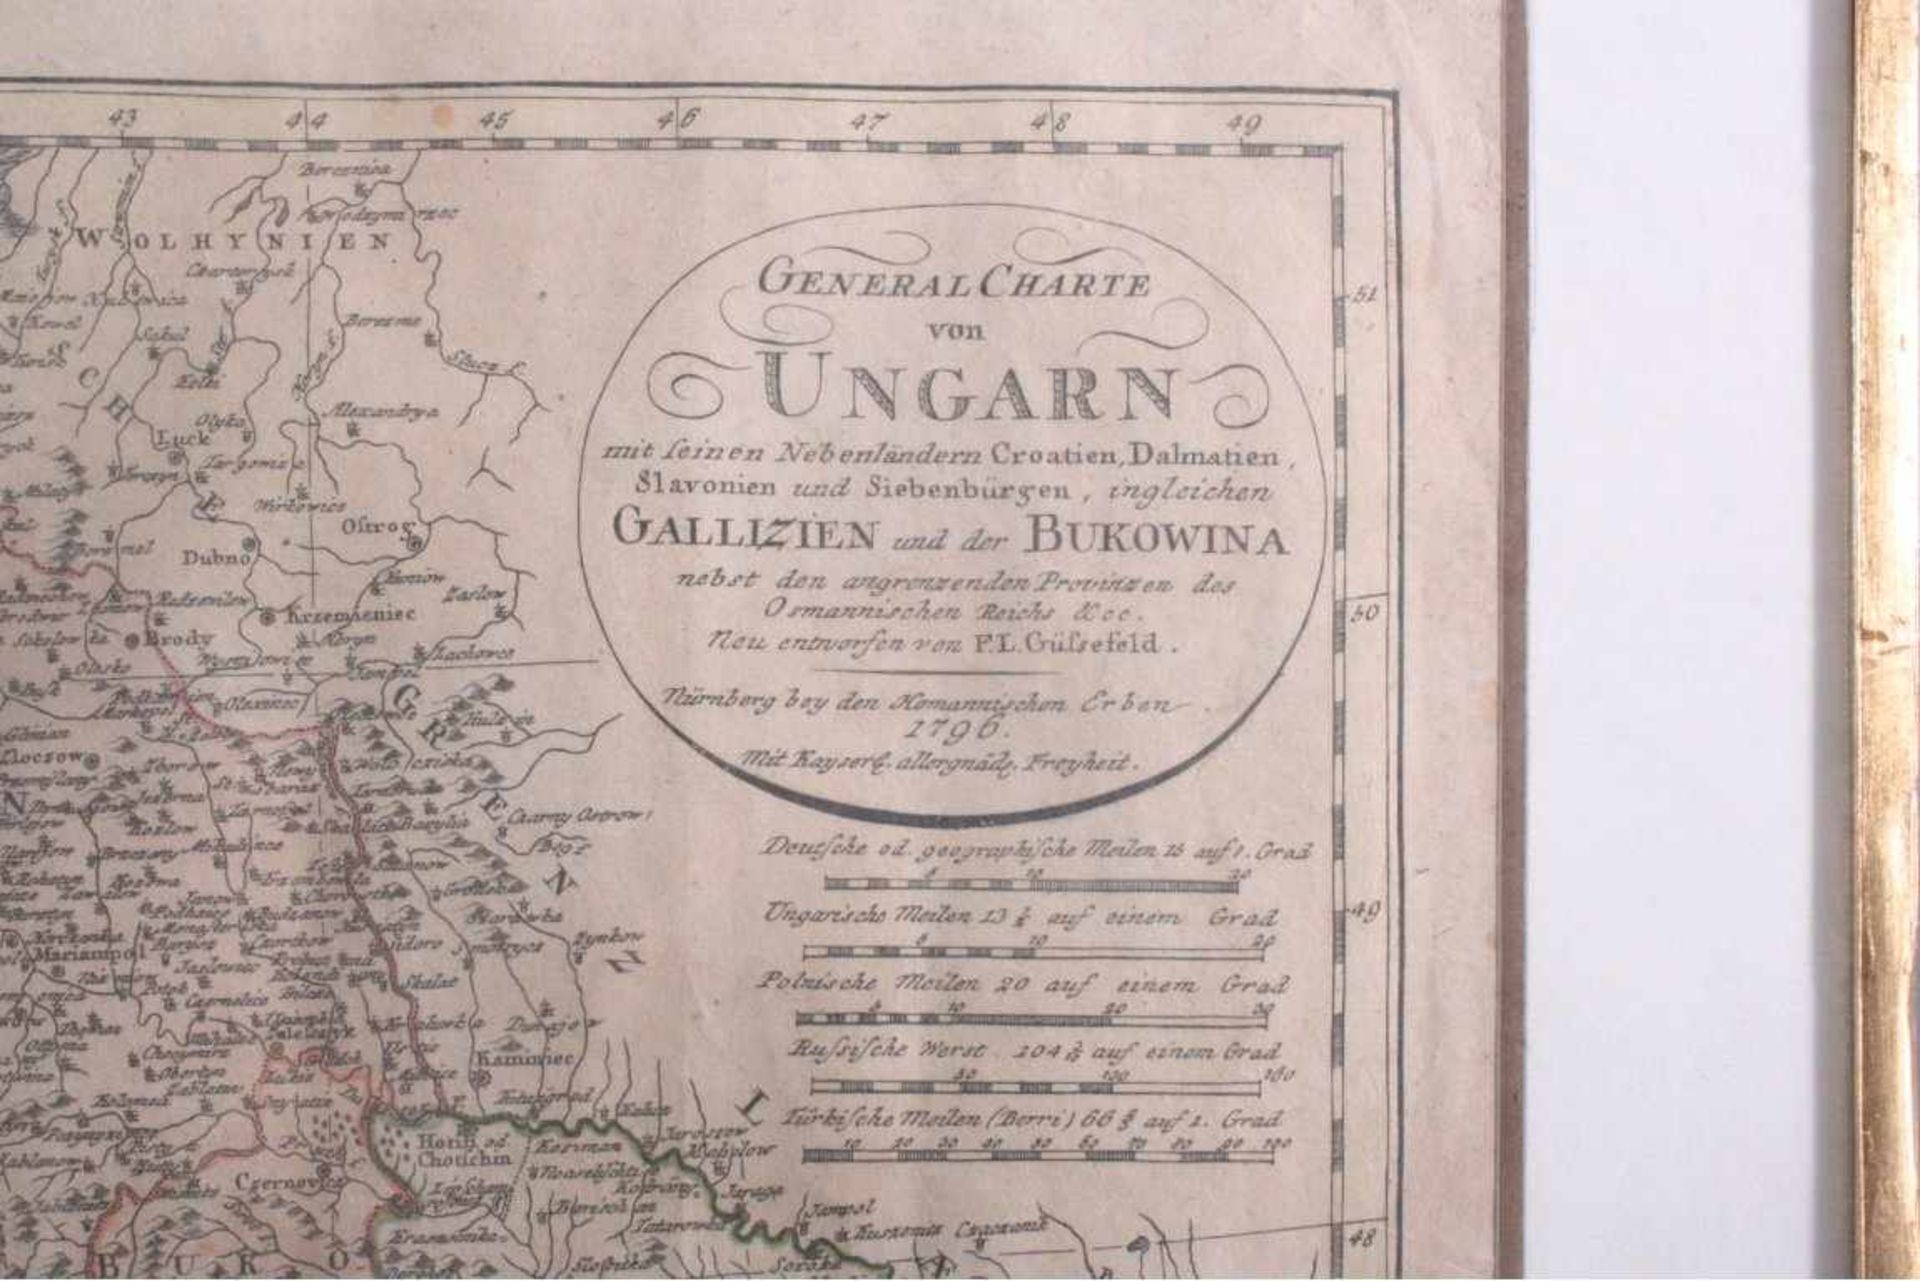 Altkolorierte Kupferstichkarte Ungarn von 1796Mittelfalte, hinter glas im Passepartout gerahmt,ca. - Bild 2 aus 3